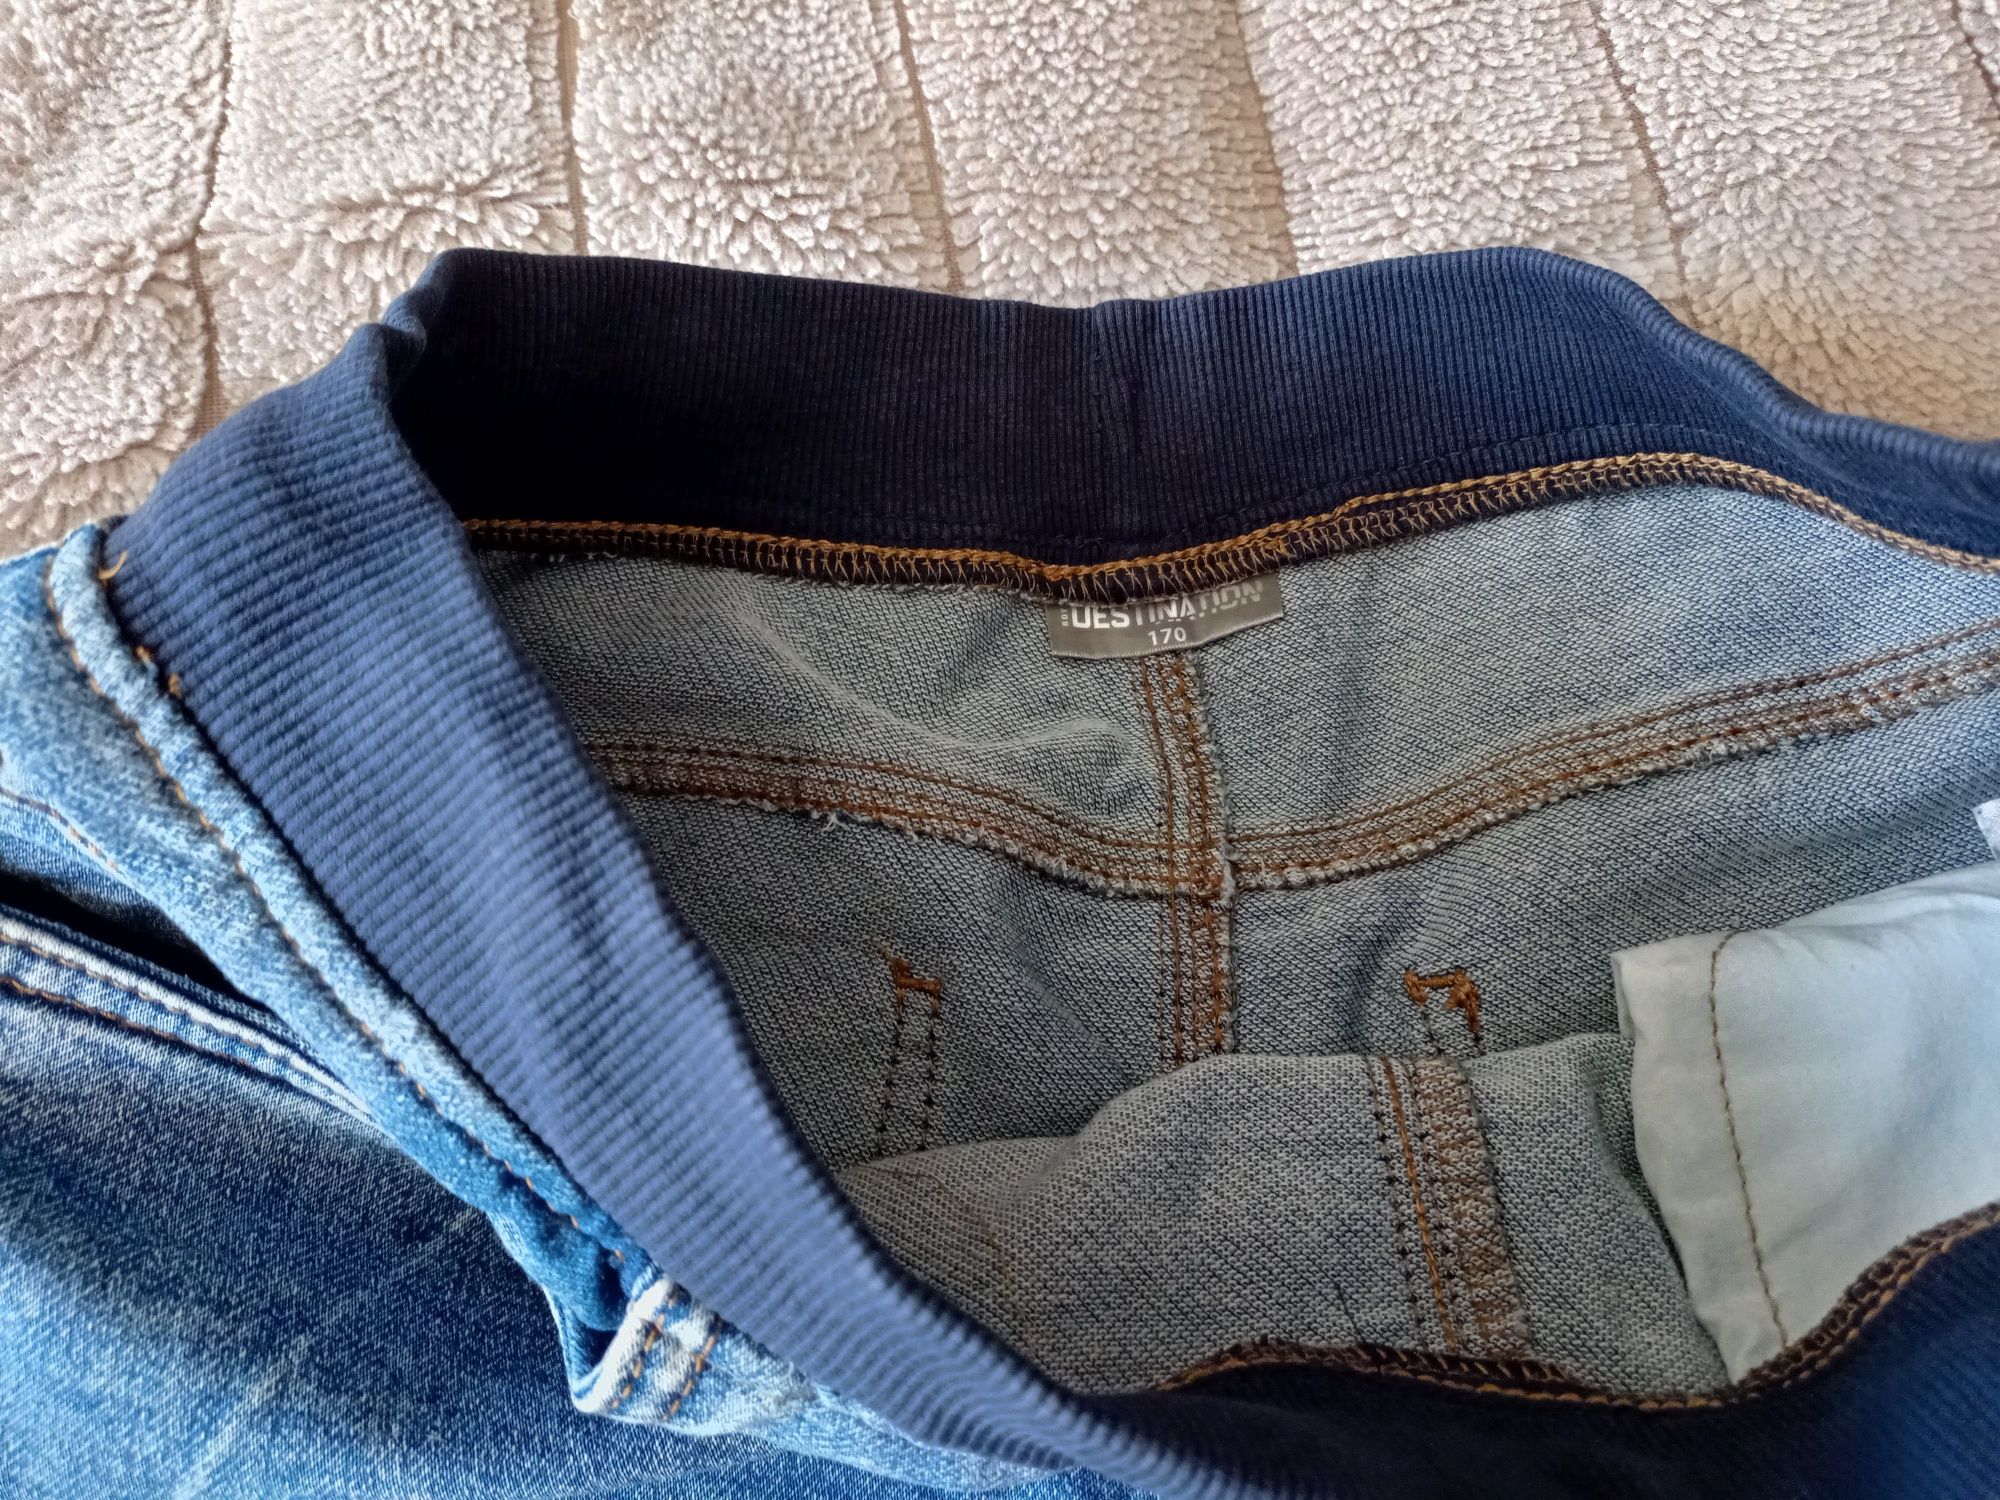 Spodnie jeansowe r.170